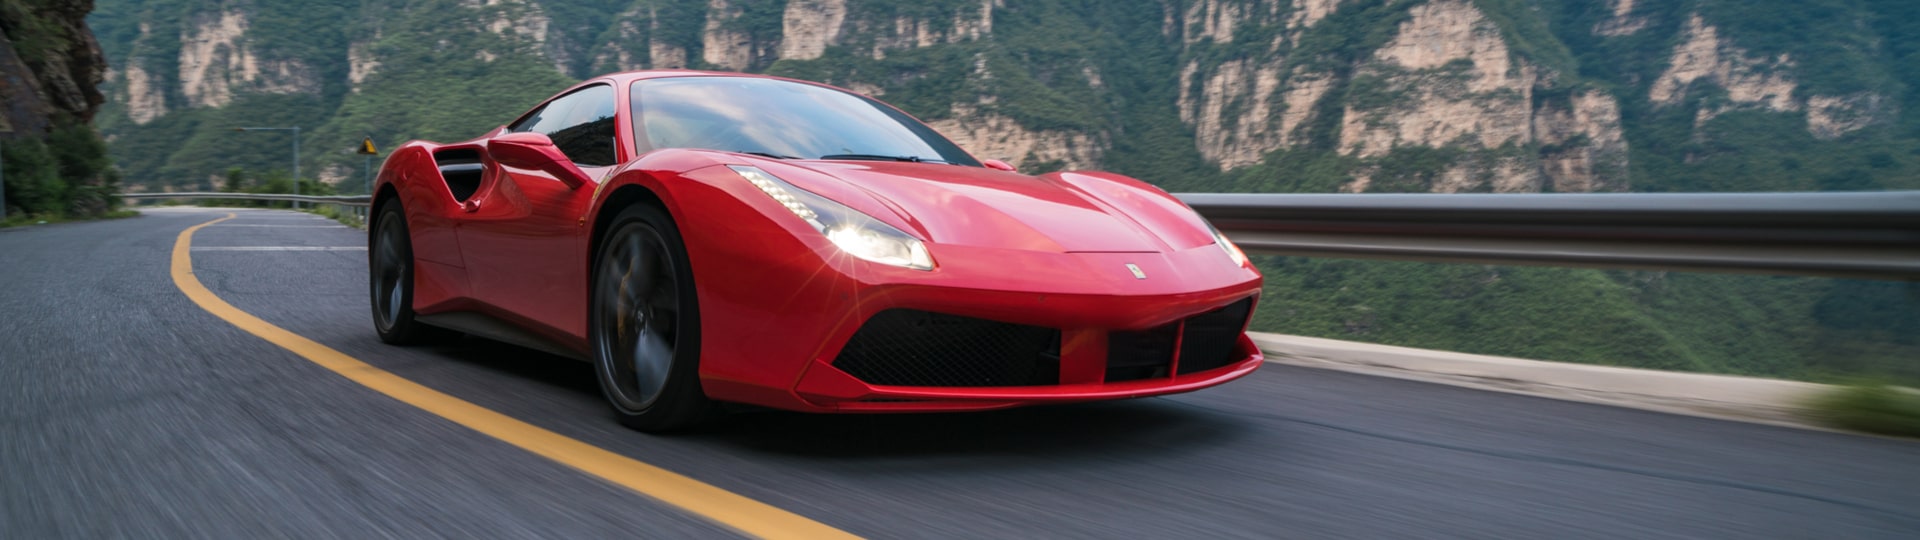 Ferrari svolává ke kontrole přes 2200 vozidel